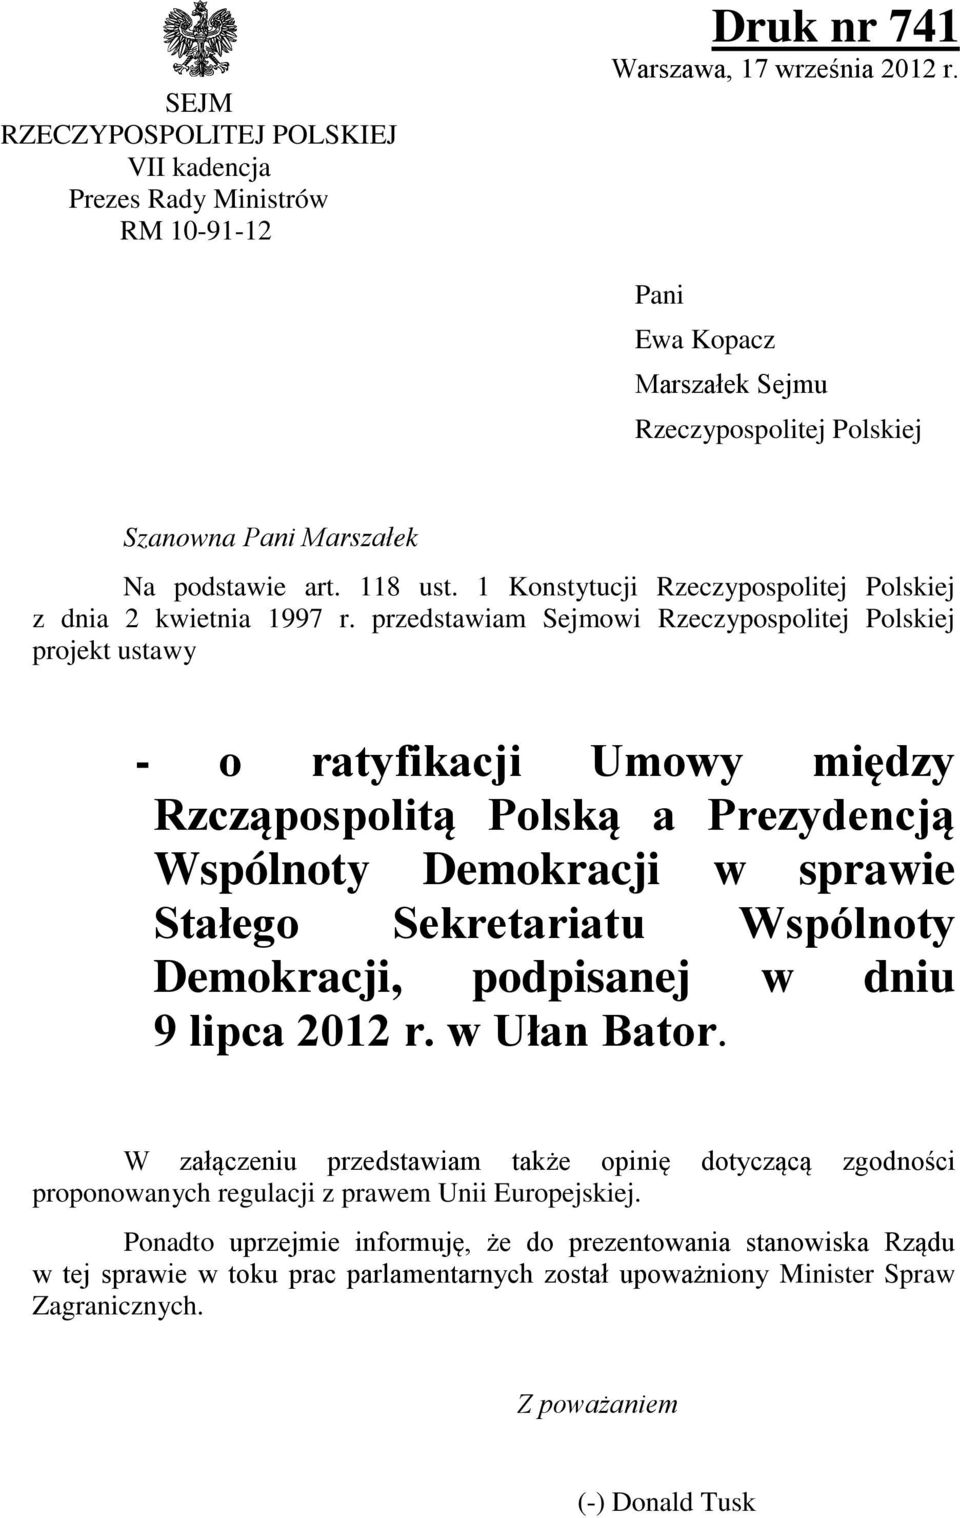 przedstawiam Sejmowi Rzeczypospolitej Polskiej projekt ustawy - o ratyfikacji Umowy między Rzcząpospolitą Polską a Prezydencją Wspólnoty Demokracji w sprawie Stałego Sekretariatu Wspólnoty